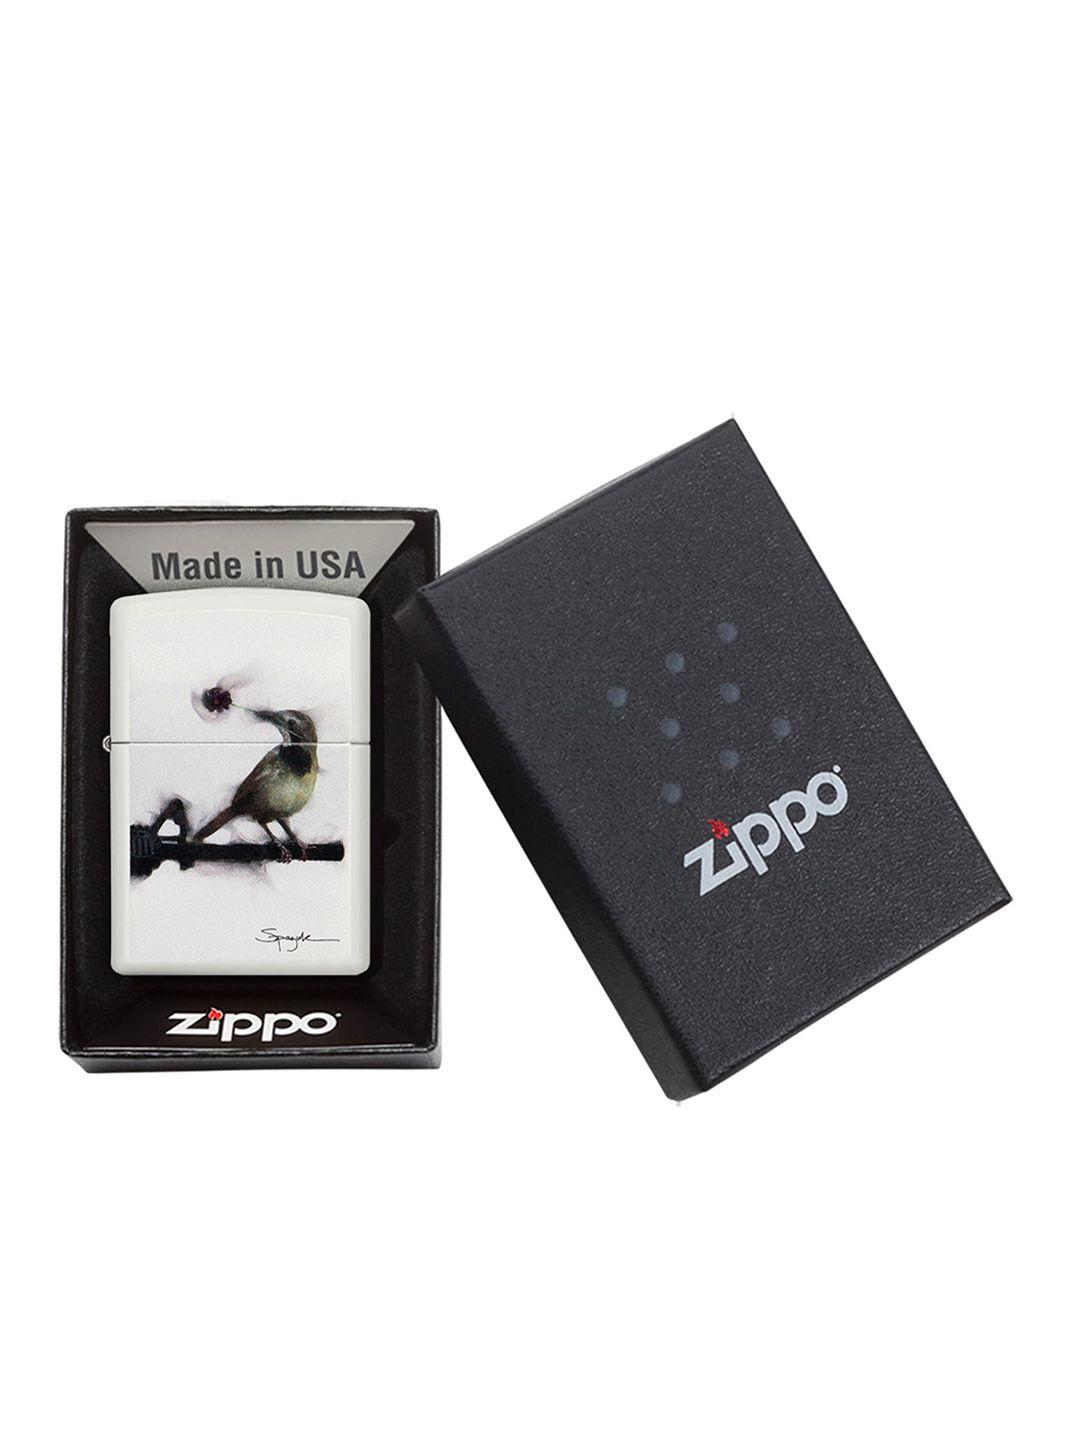 zippo white & black pocket lighter